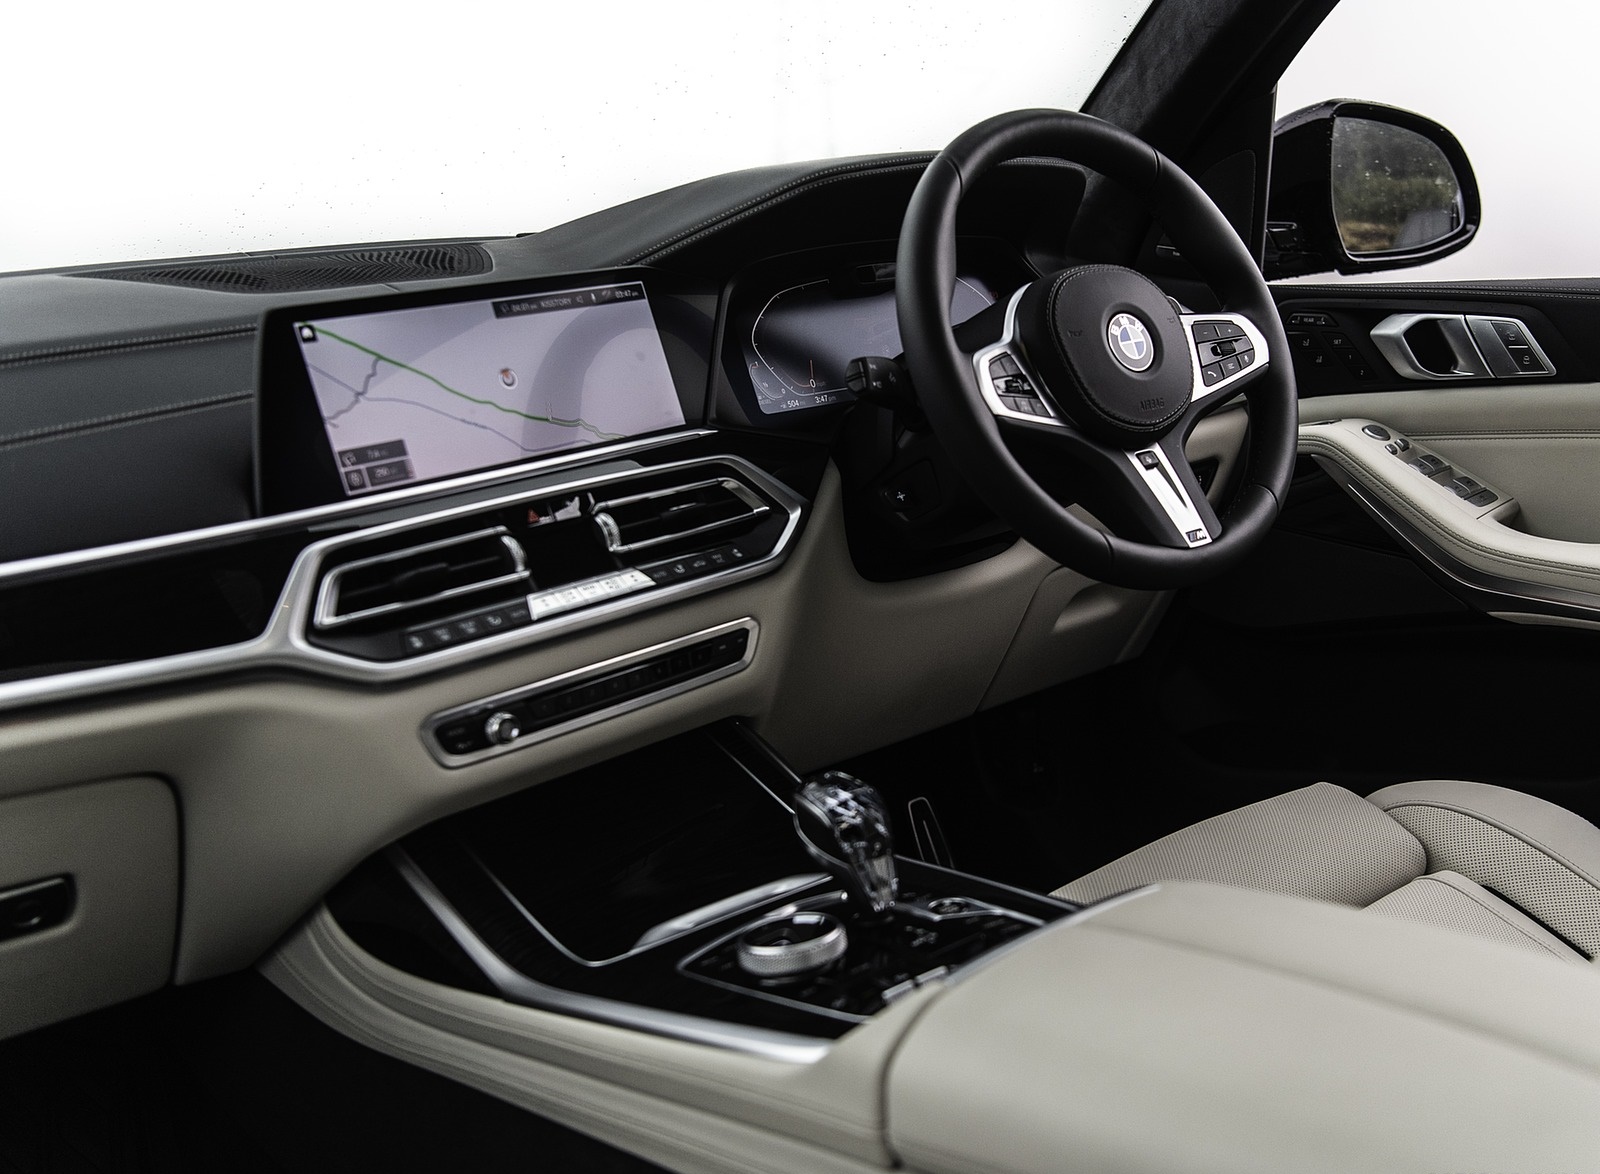 2019 BMW X7 30d (UK-Spec) Interior Wallpapers #100 of 103